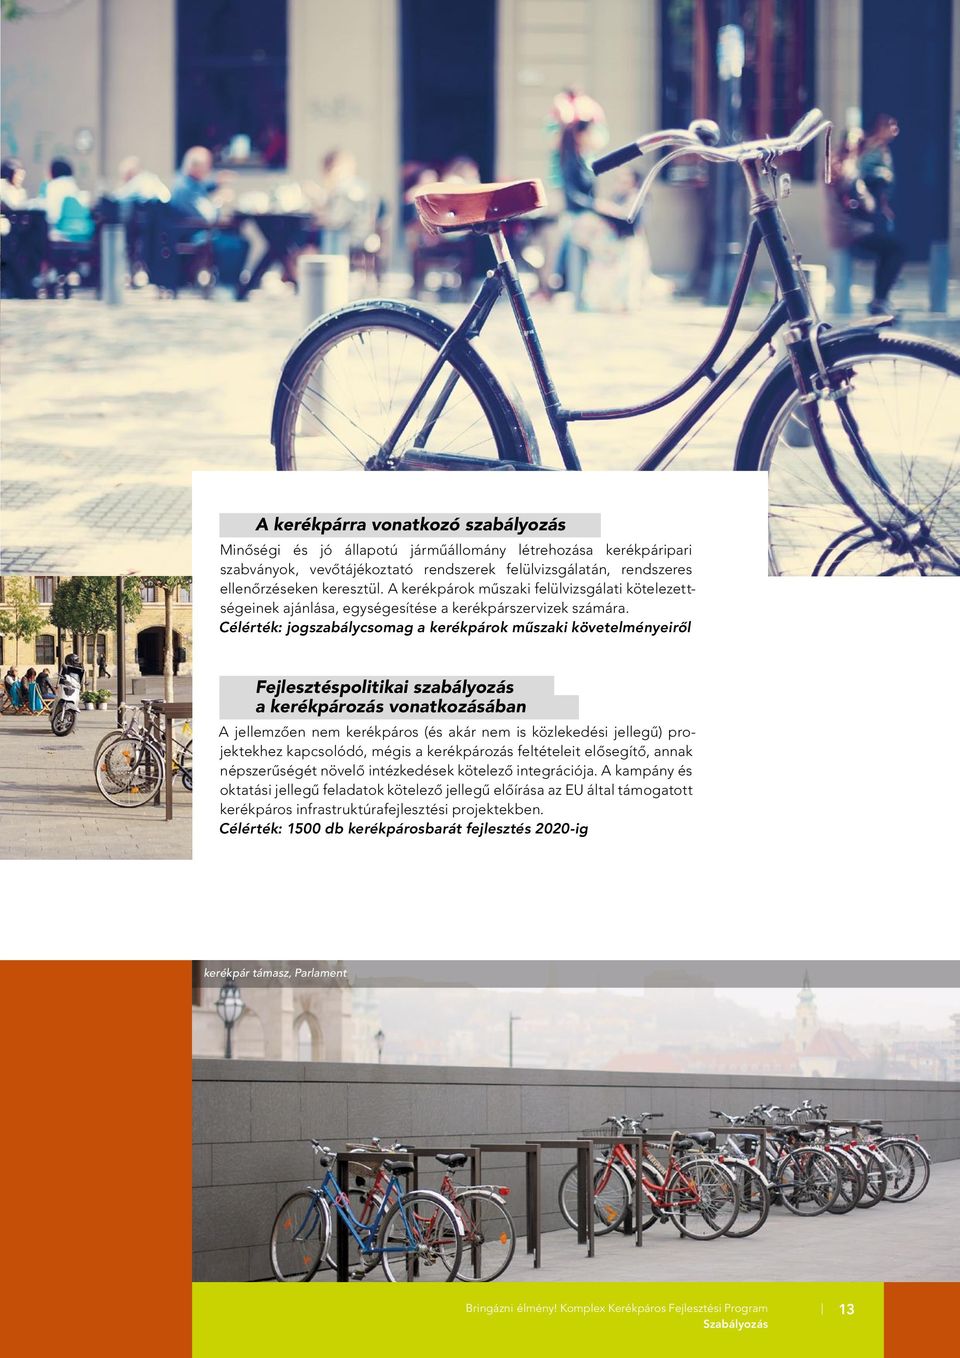 Célérték: jogszabálycsomag a kerékpárok mûszaki k ö ve tel ményeirôl Fejlesztéspolitikai szabályozás a kerékpározás vonatkozásában A jellemzôen nem kerékpáros (és akár nem is közlekedési jellegû)